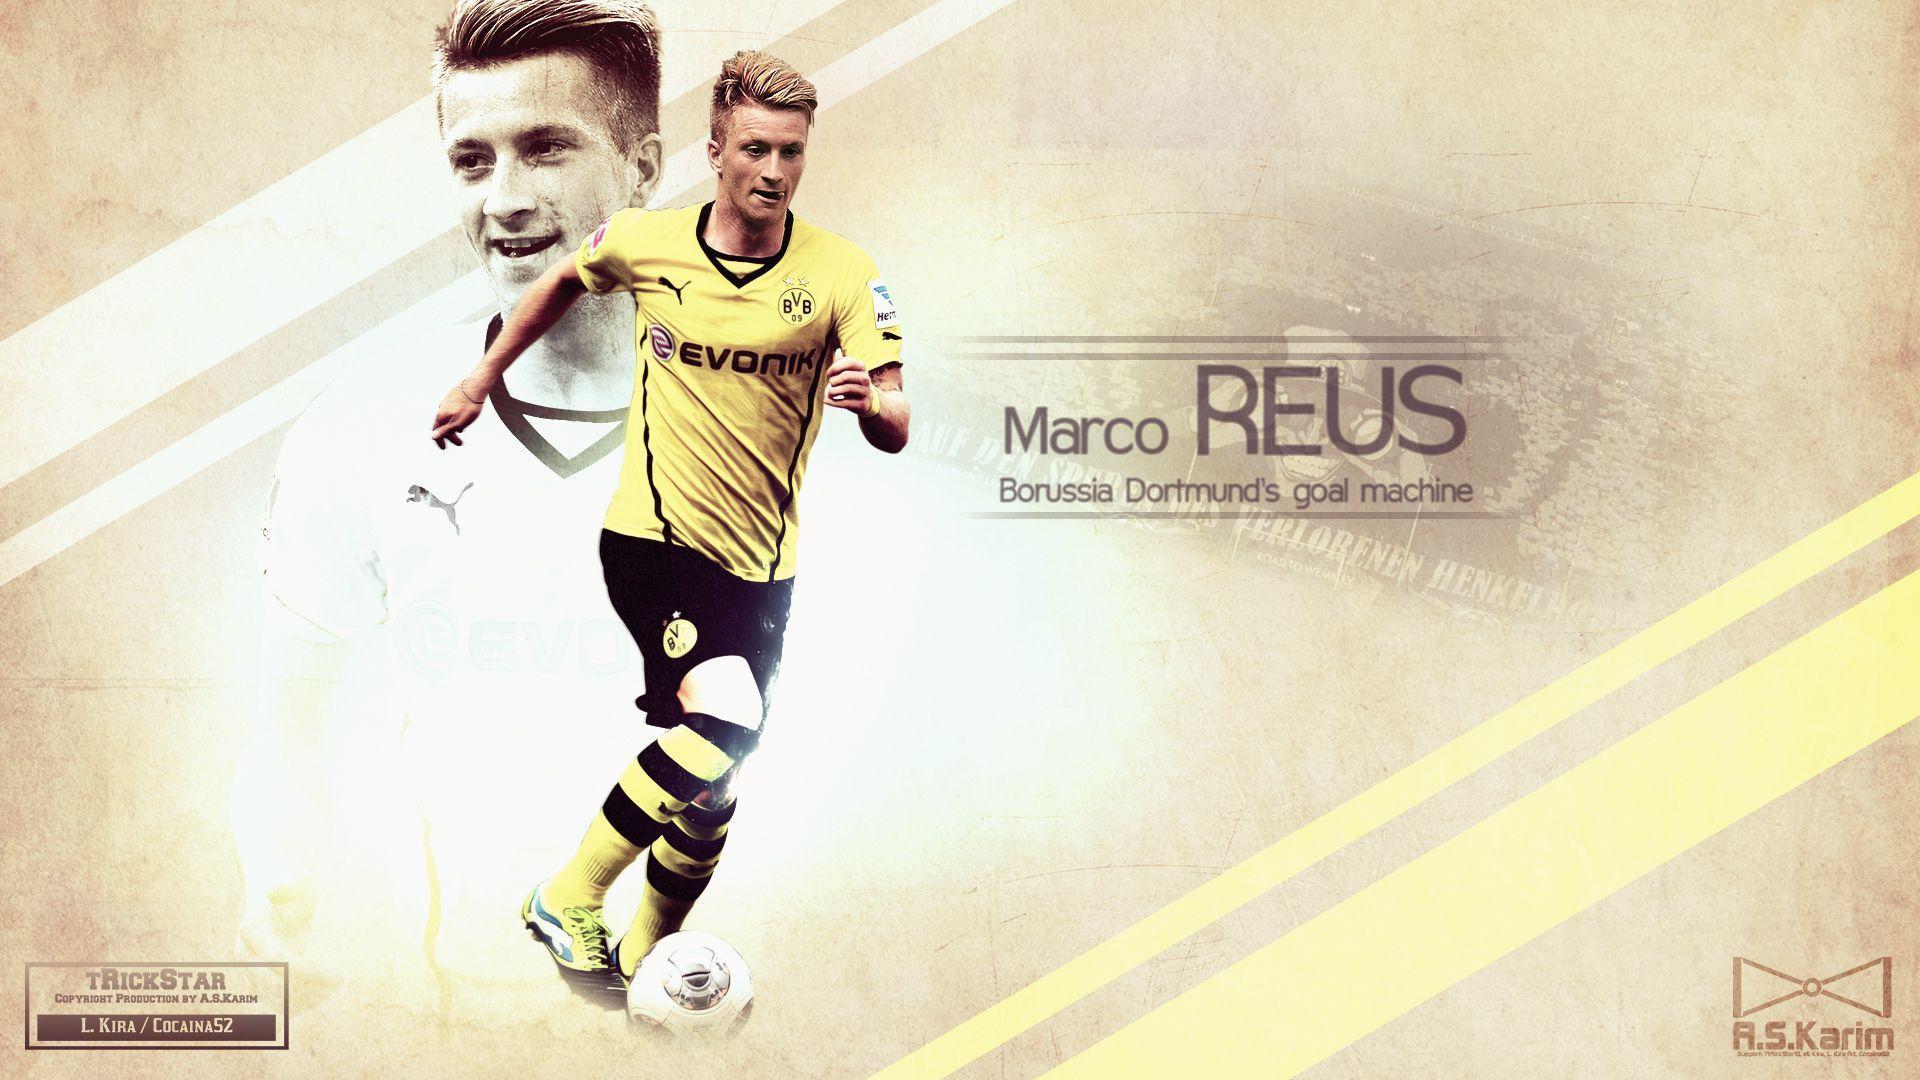 Marco Reus Wallpaper, Magnificent HDQ Live Marco Reus Pics